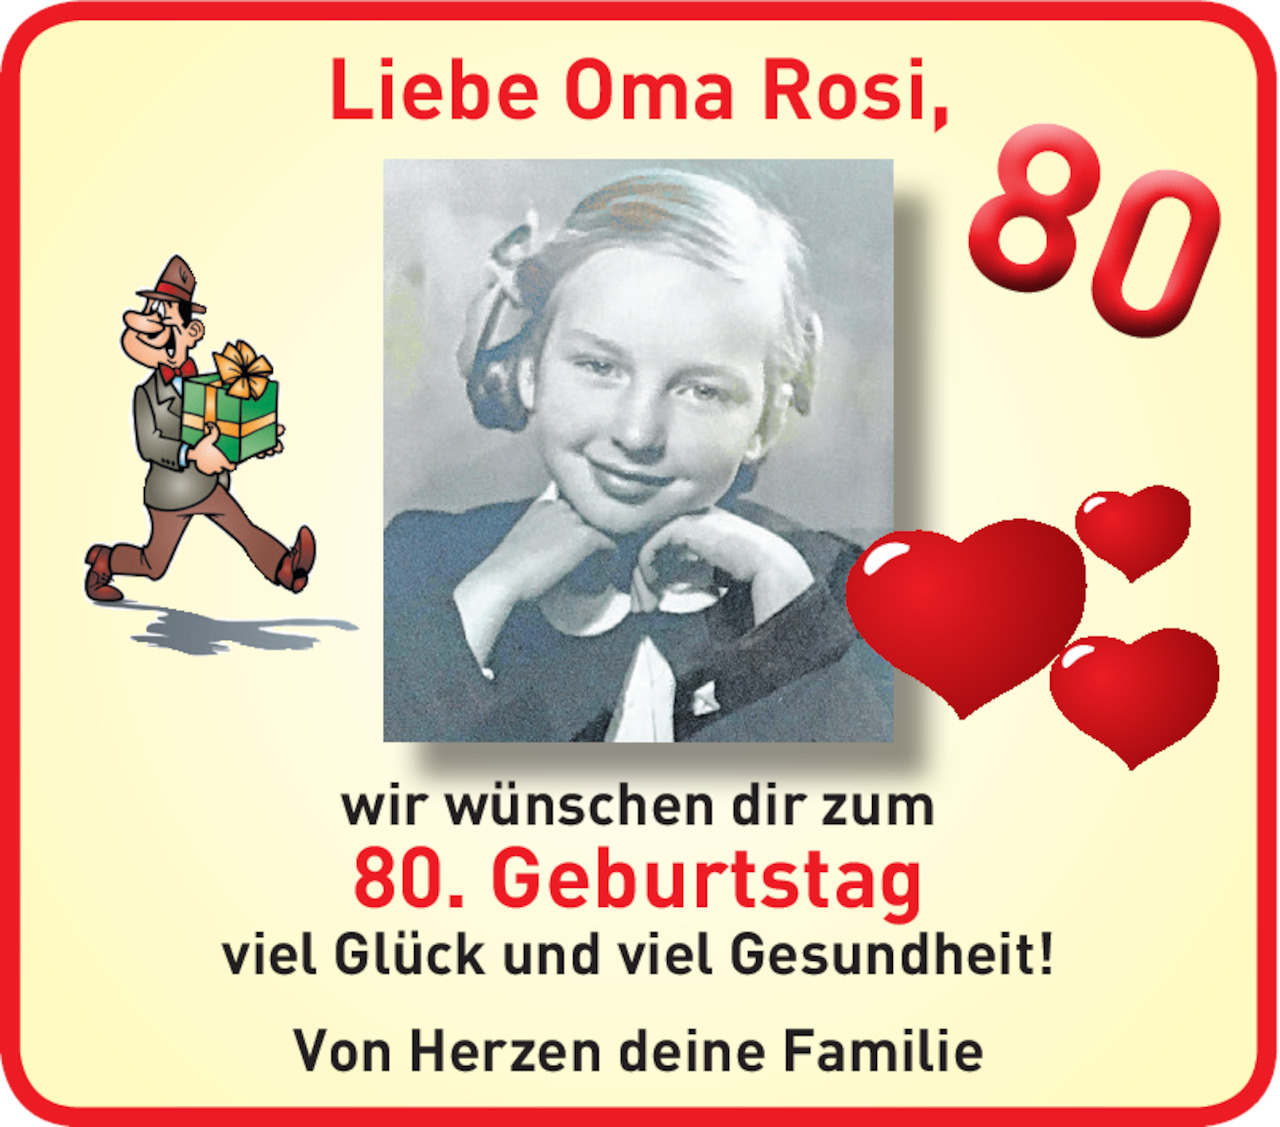 Herzlichkeit Von 80 Geburtstag Vom 05 05 Tiroler eszeitung Online